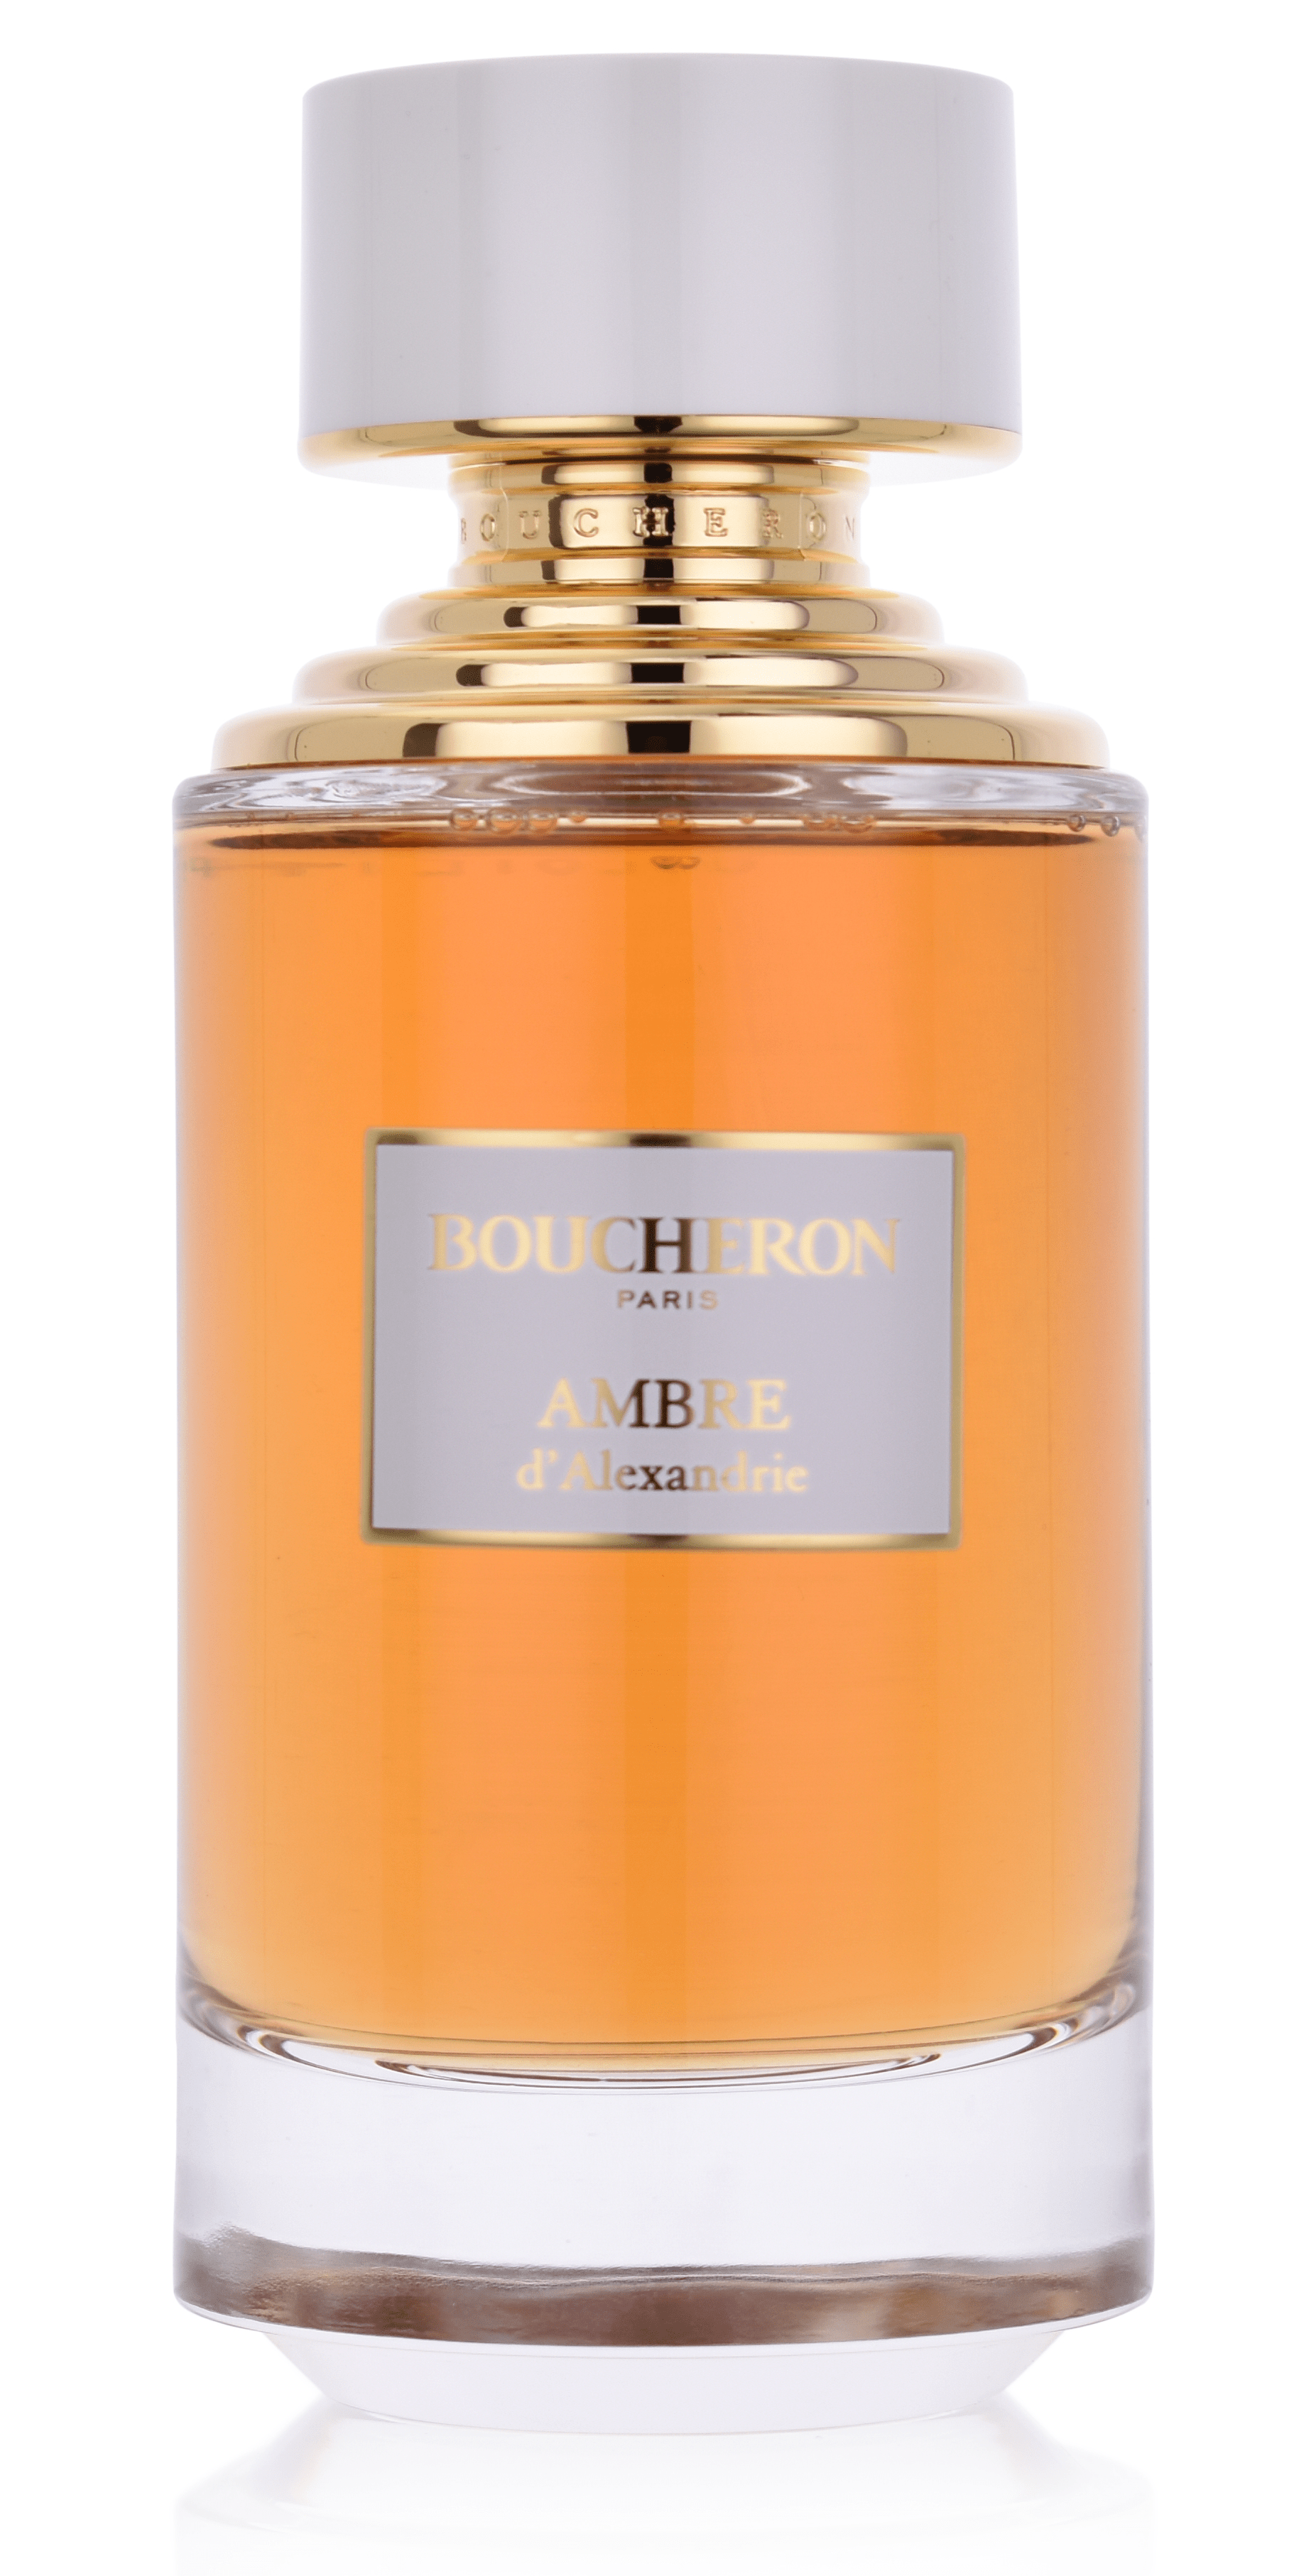 Boucheron Ambre D'Alexandrie 125 ml Eau de Parfum   